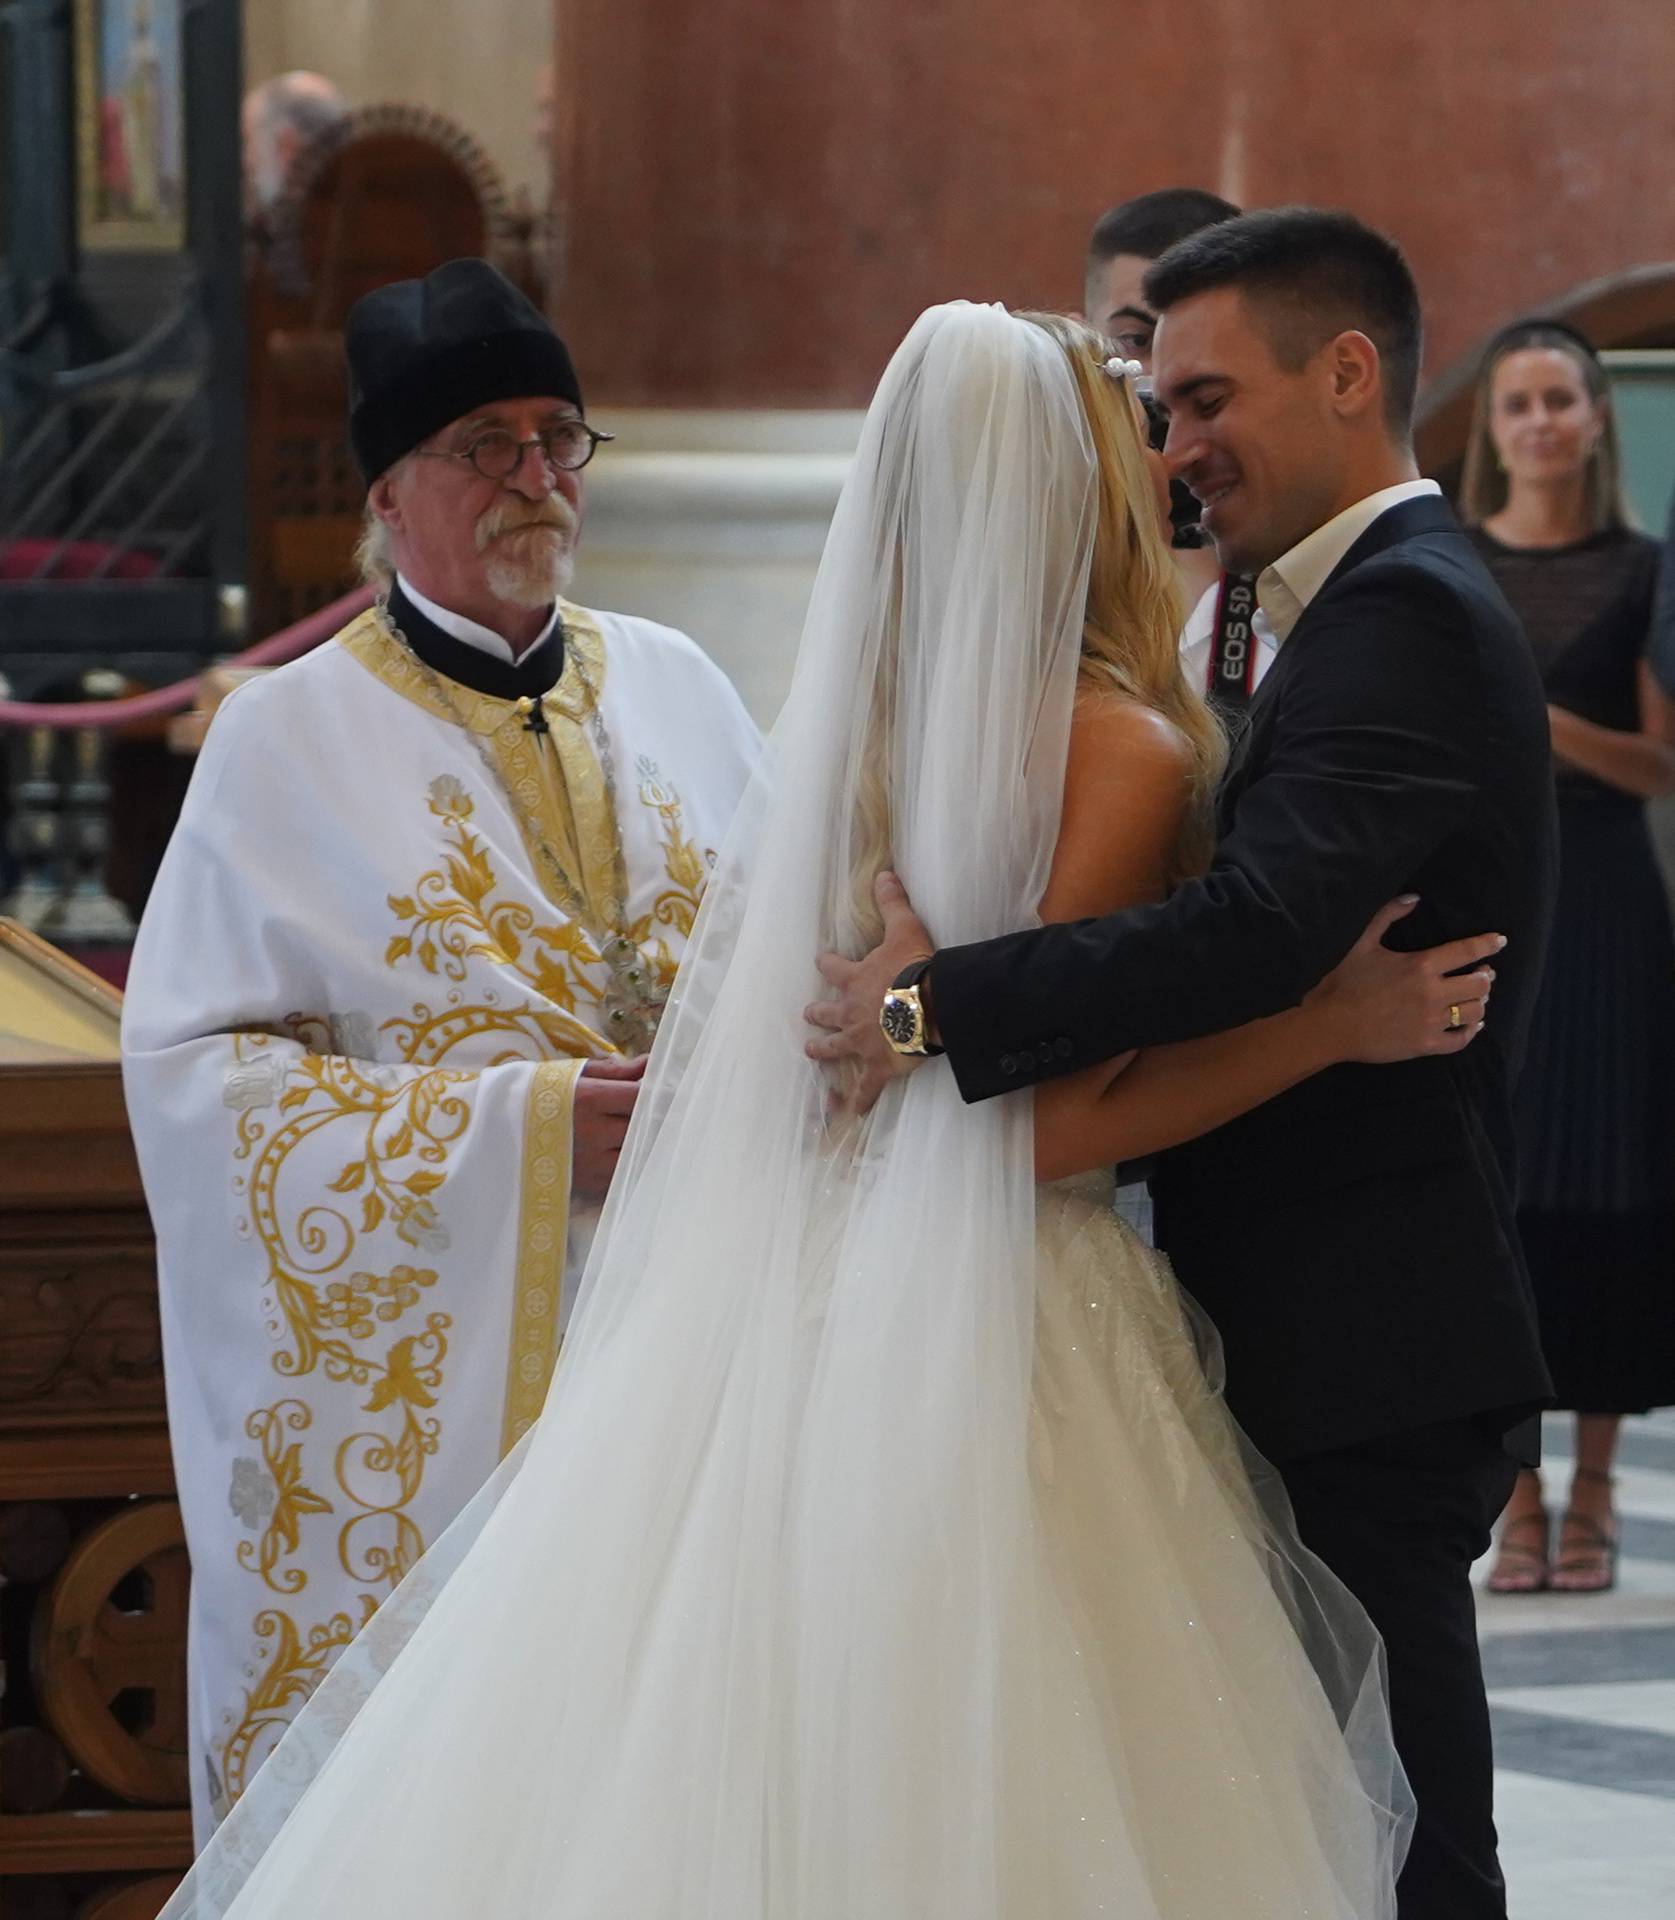 Beograd: Đorđe Đoković i njegova zaručnica Saška Veselinov vjenčali su se u crkvi sv. Marka